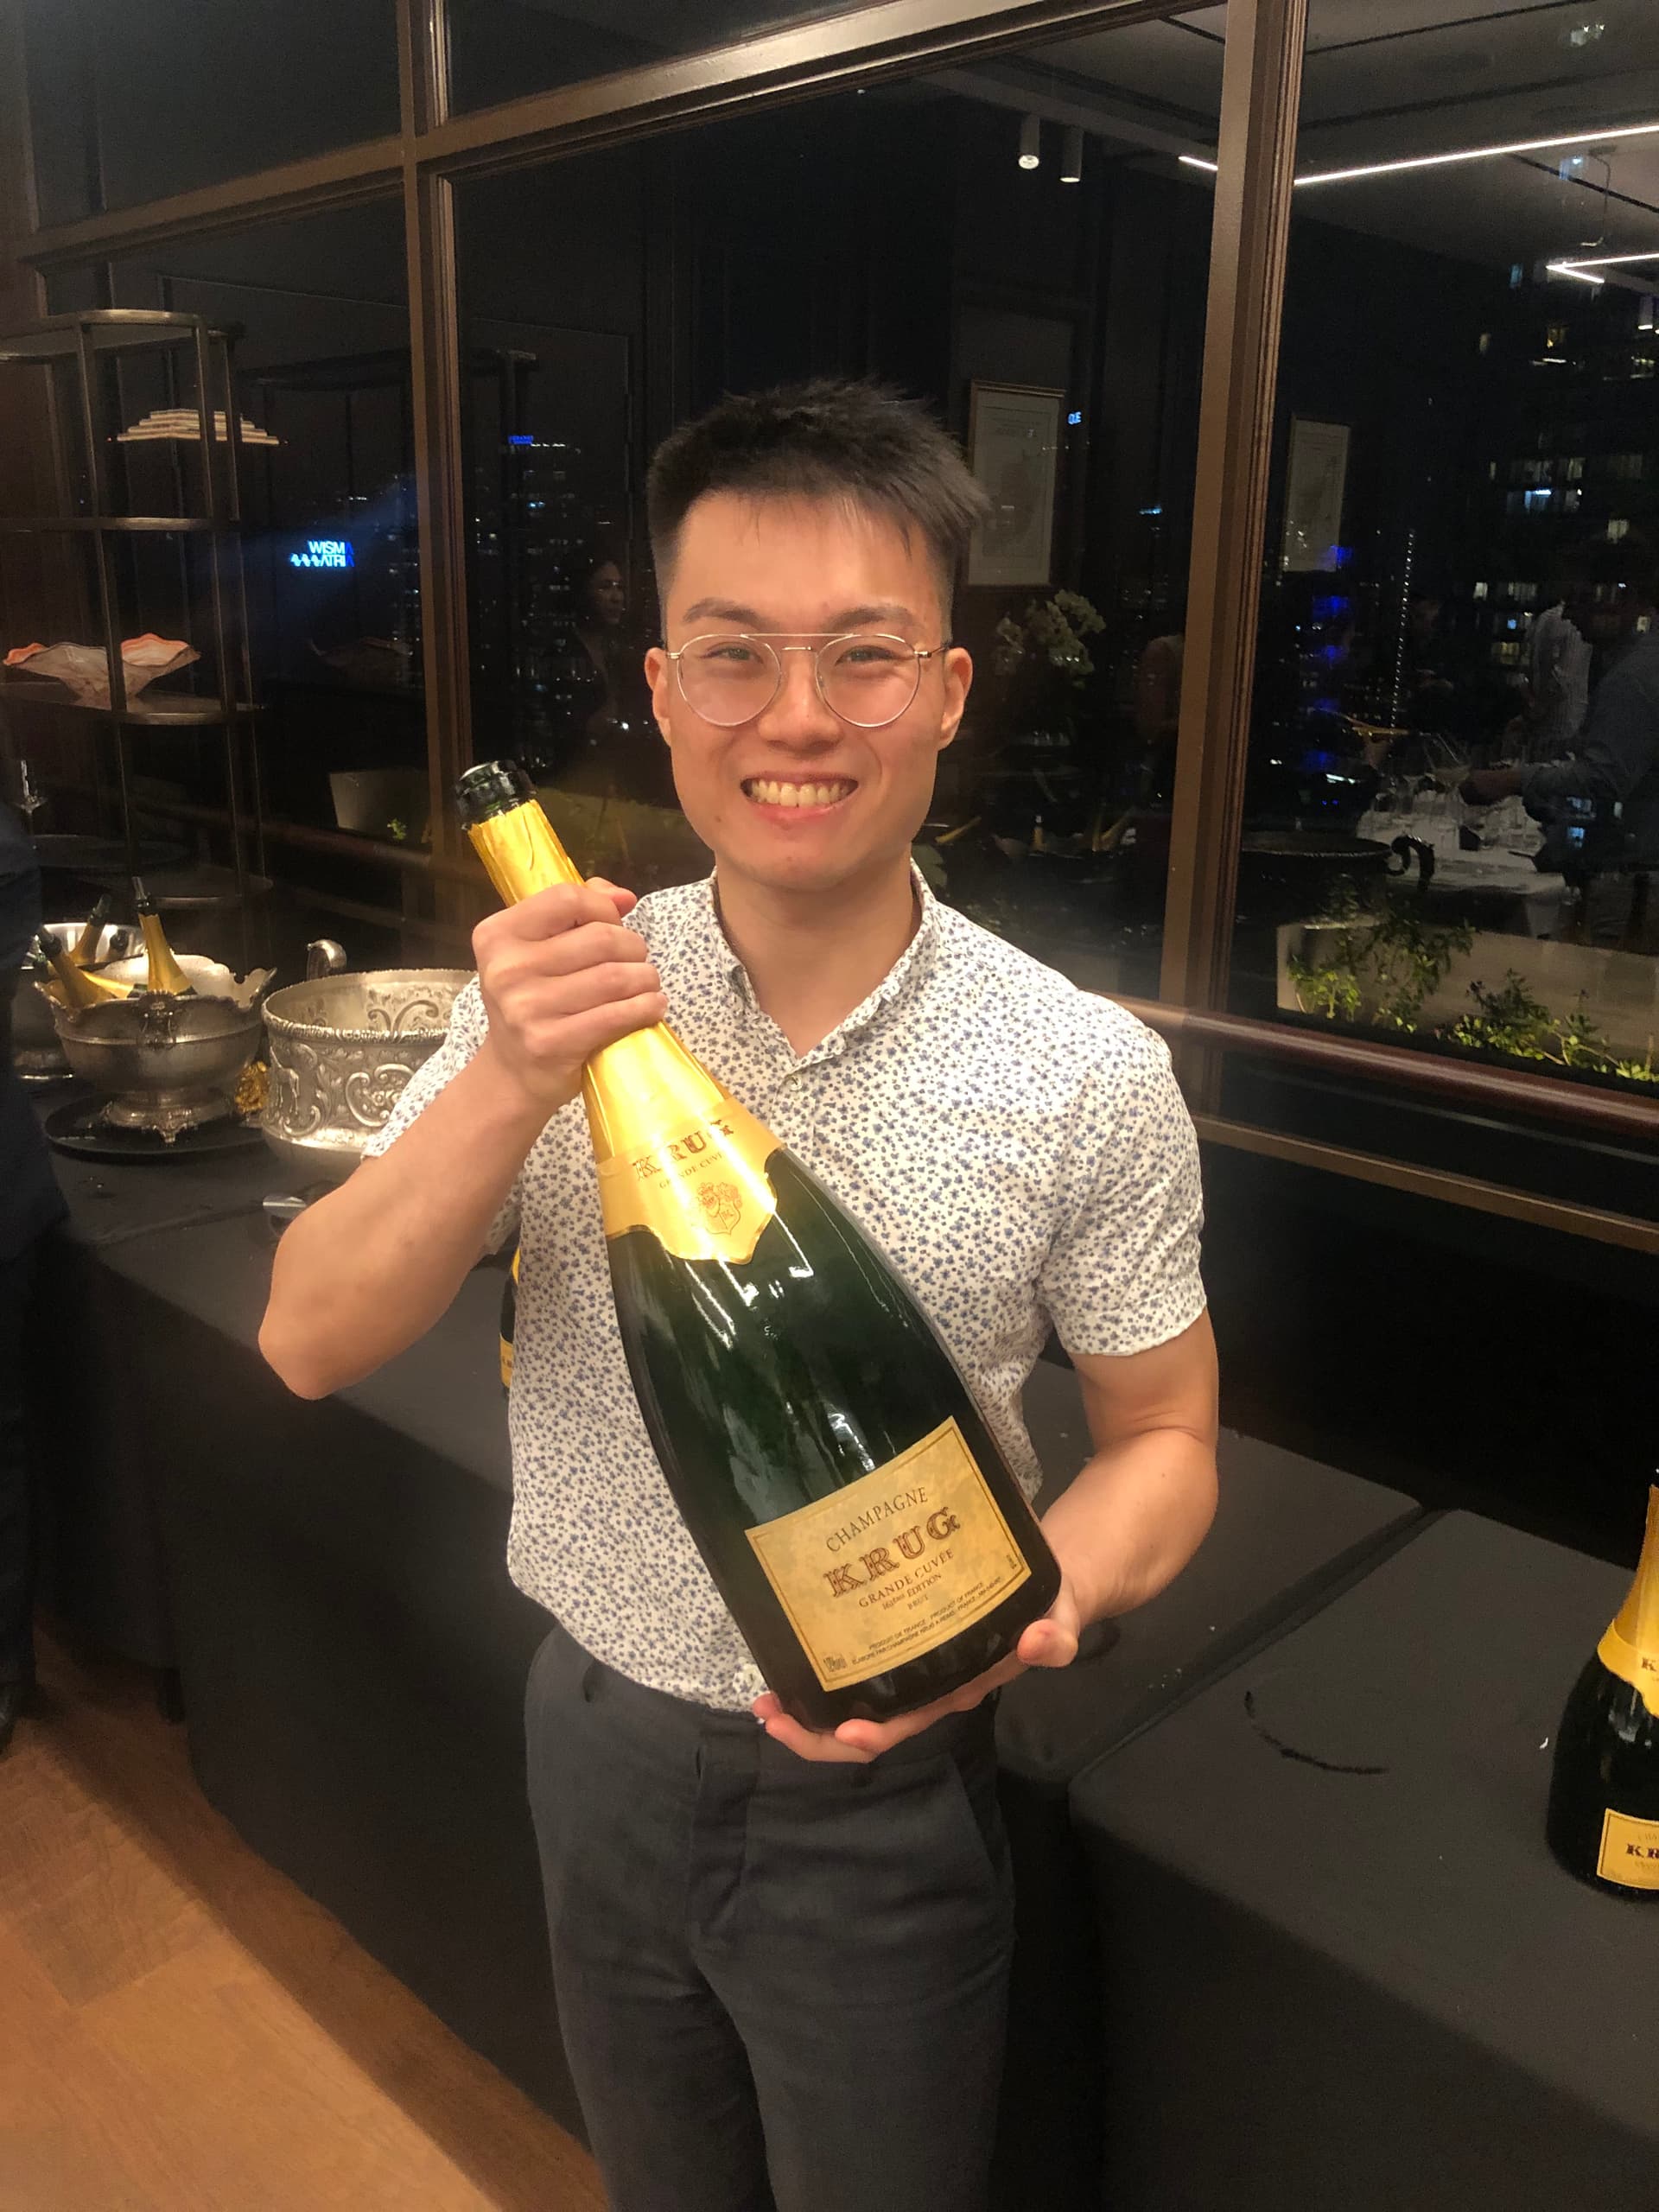 3 BOTTLES = 1,400 $ 😮 MASTER OF WINE Tastes KRUG Champagne 